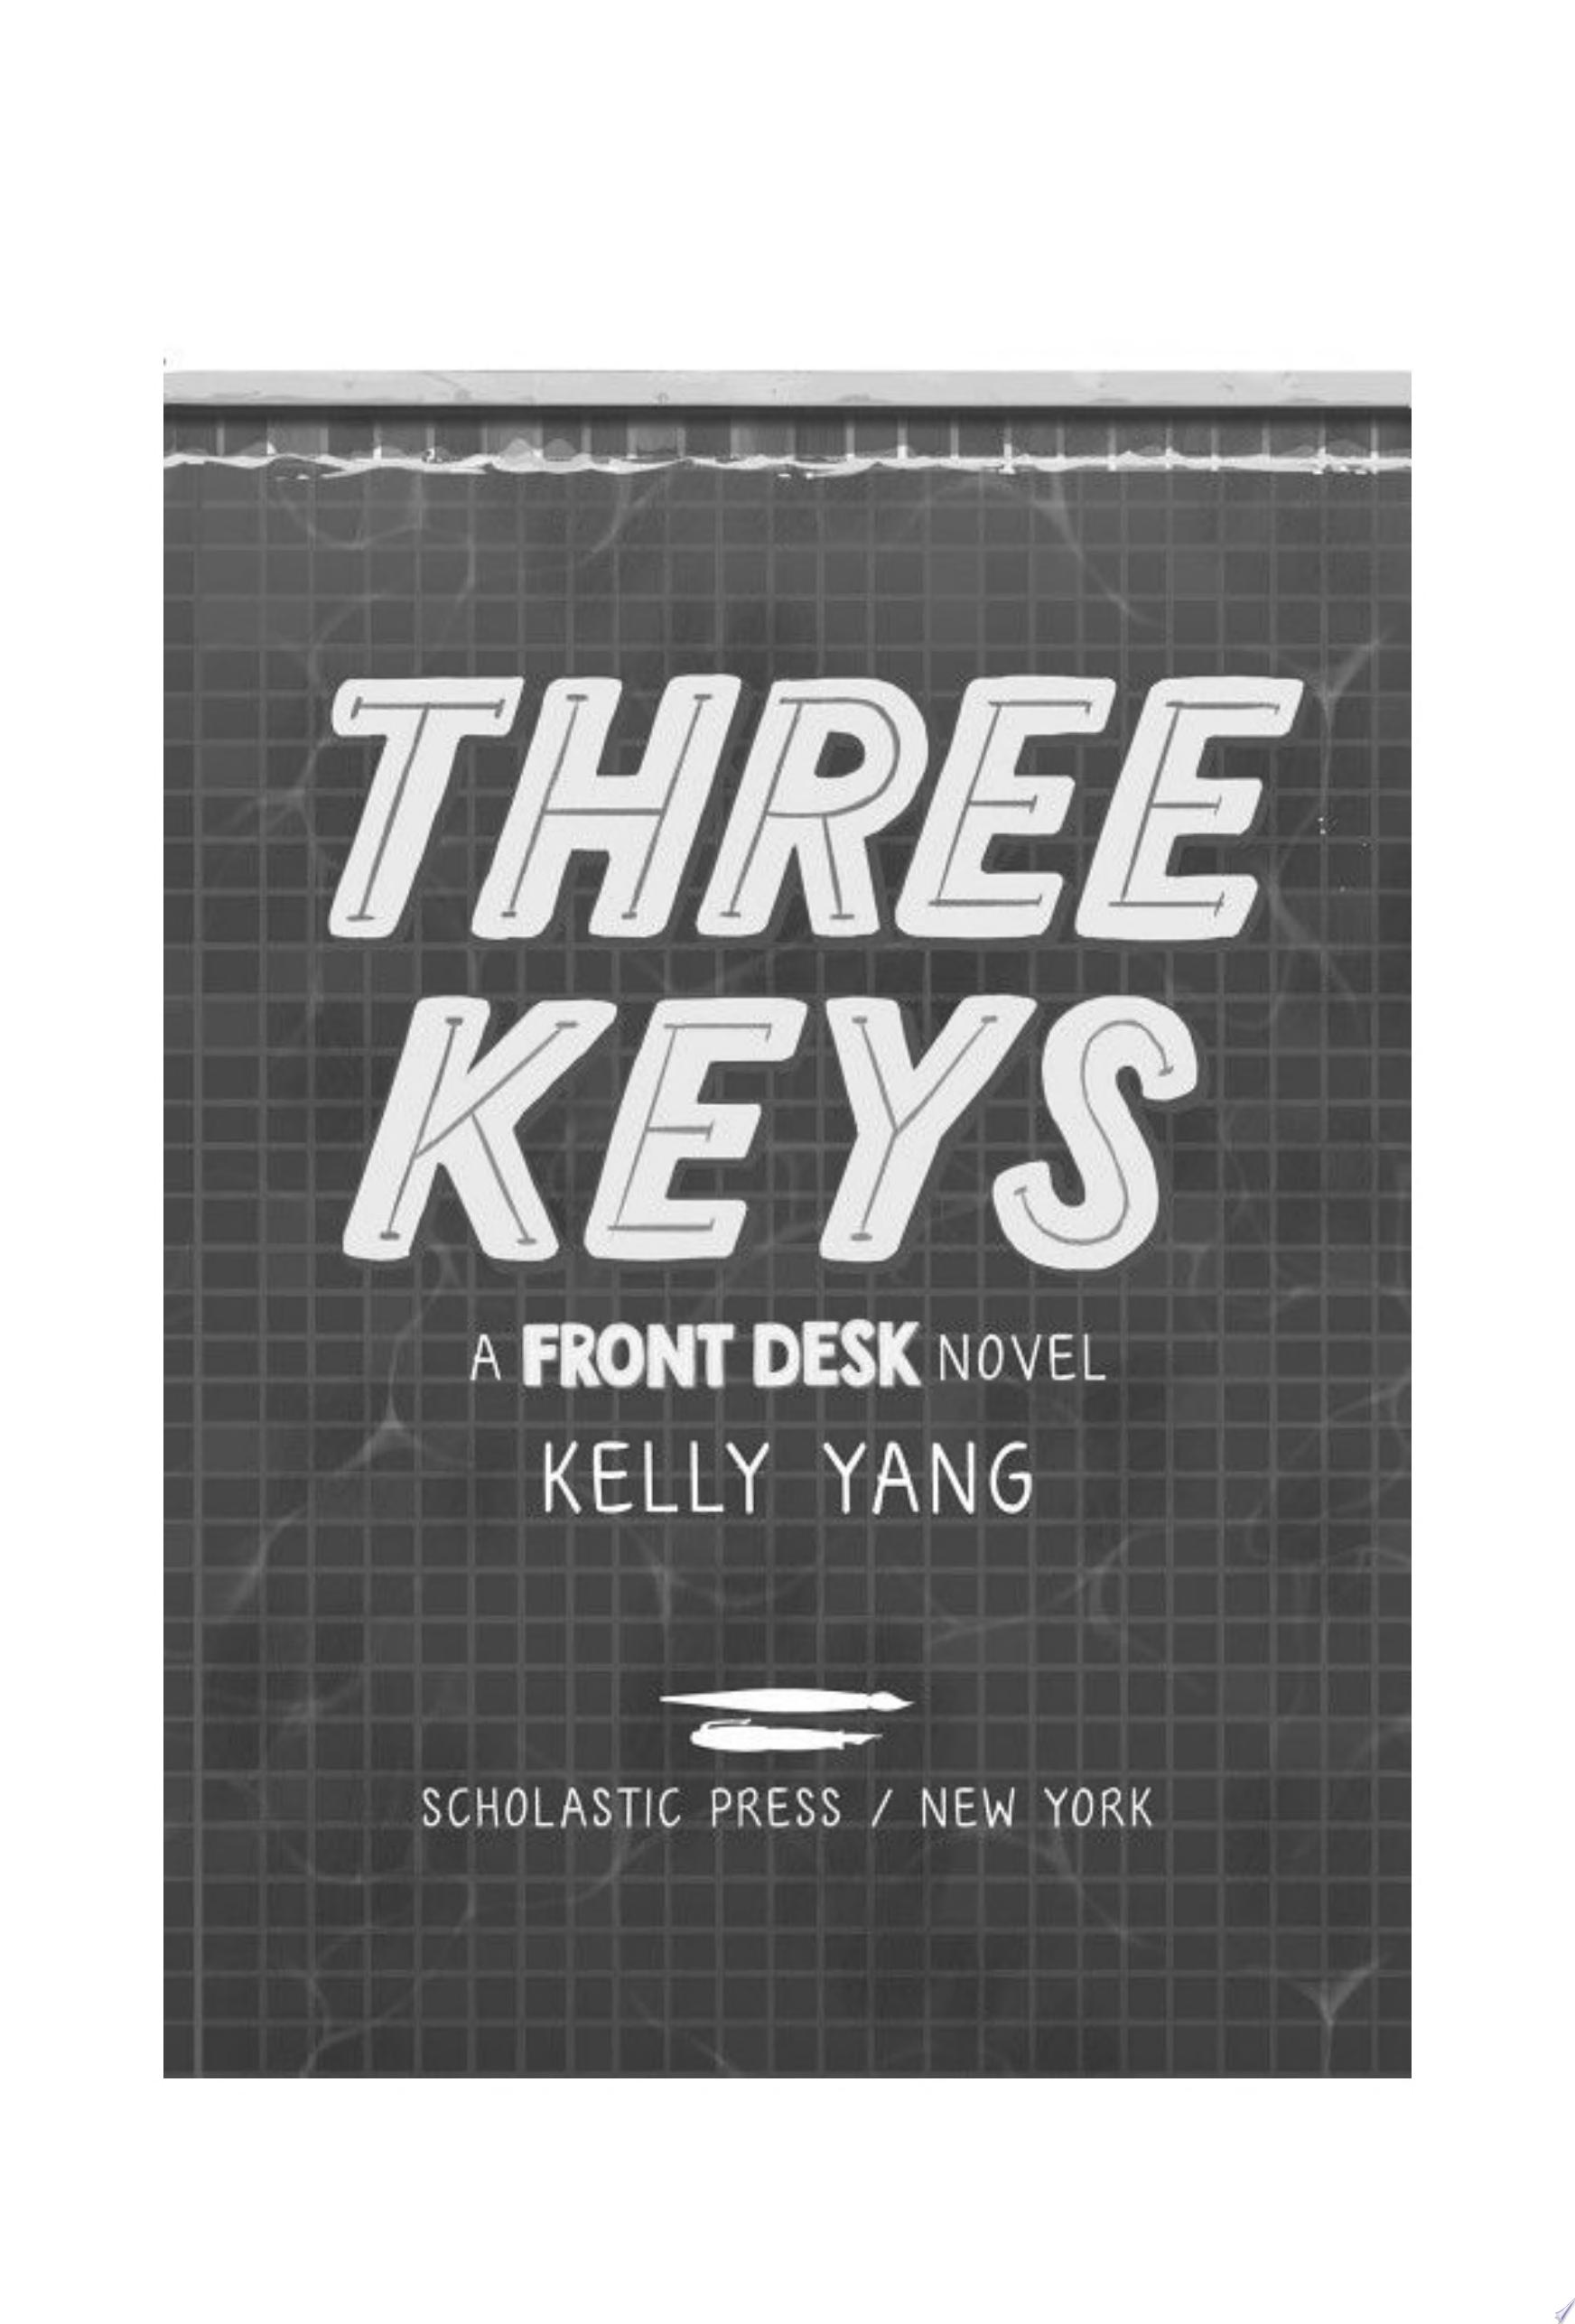 Image for "Three Keys (A Front Desk Novel)"